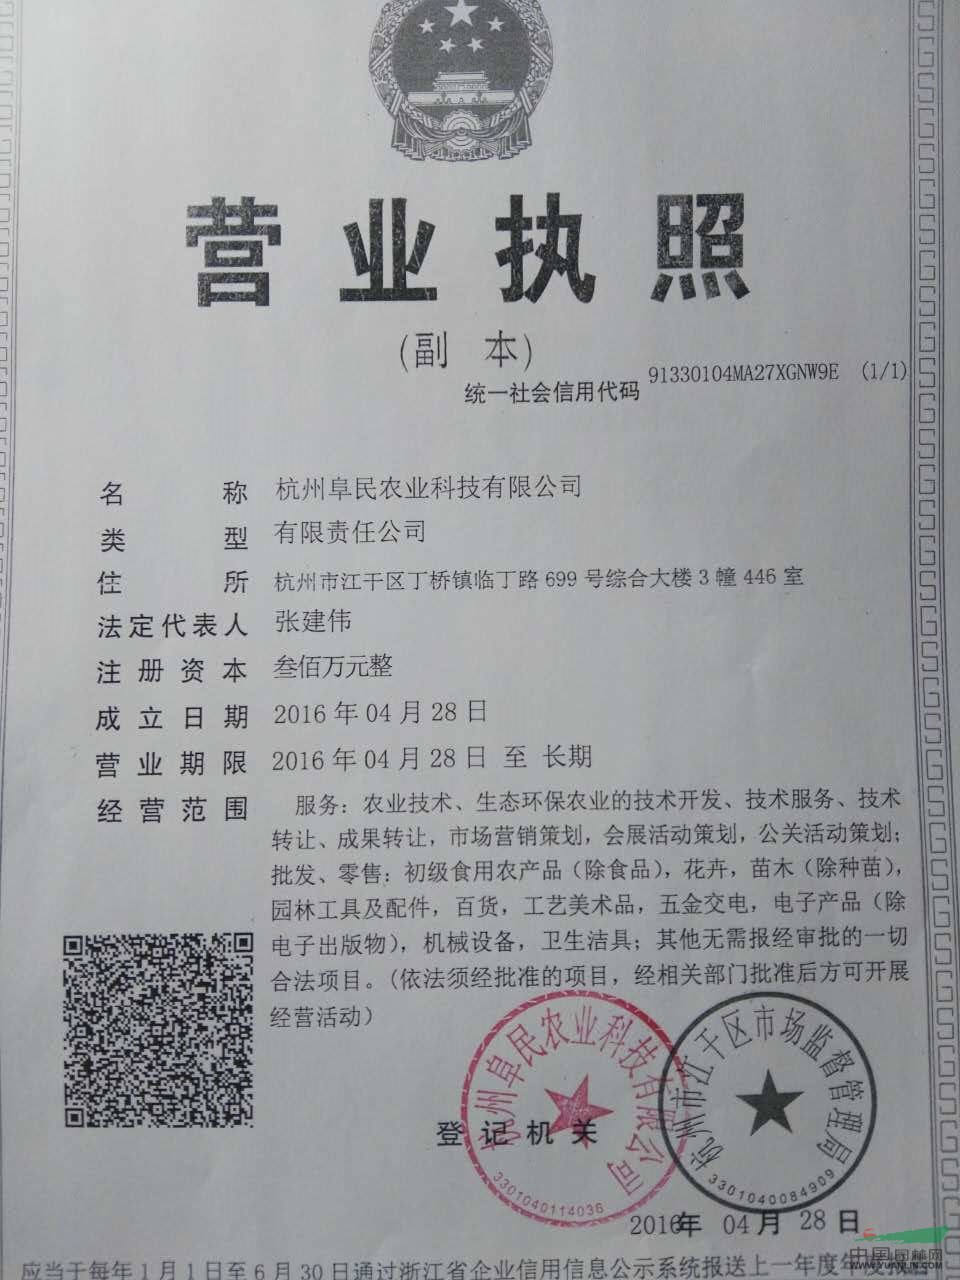 杭州阜民农业科技有限公司 - 中国园林网会员认